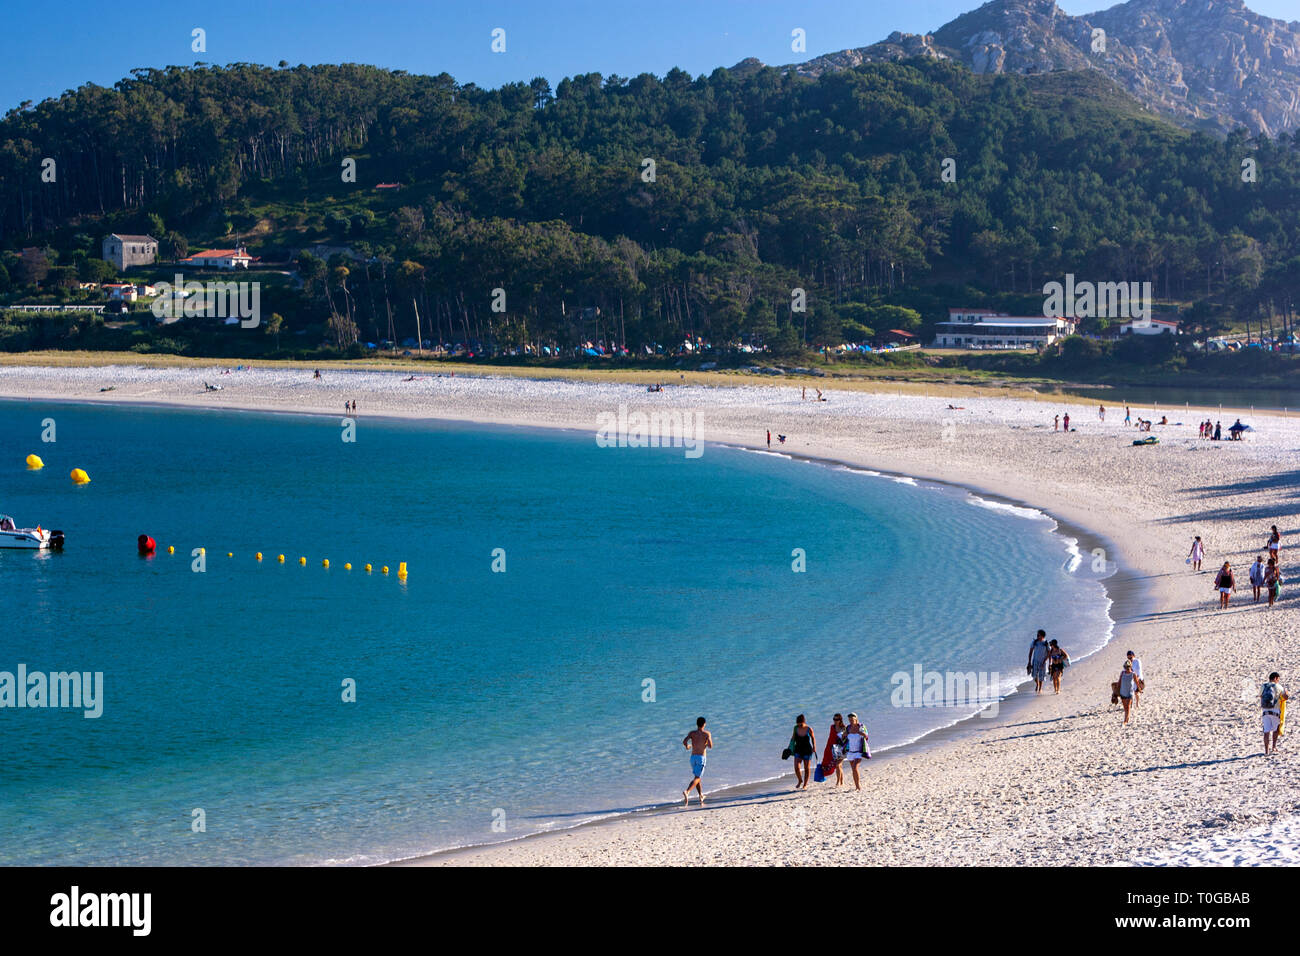 Playa de Rodas, malerischen Crescent mit feinem weißen Sand, türkisfarbenes Wasser unterstützt durch Dünen und Pinien, Cies Inseln, Ria de Vigo, Spanien Stockfoto